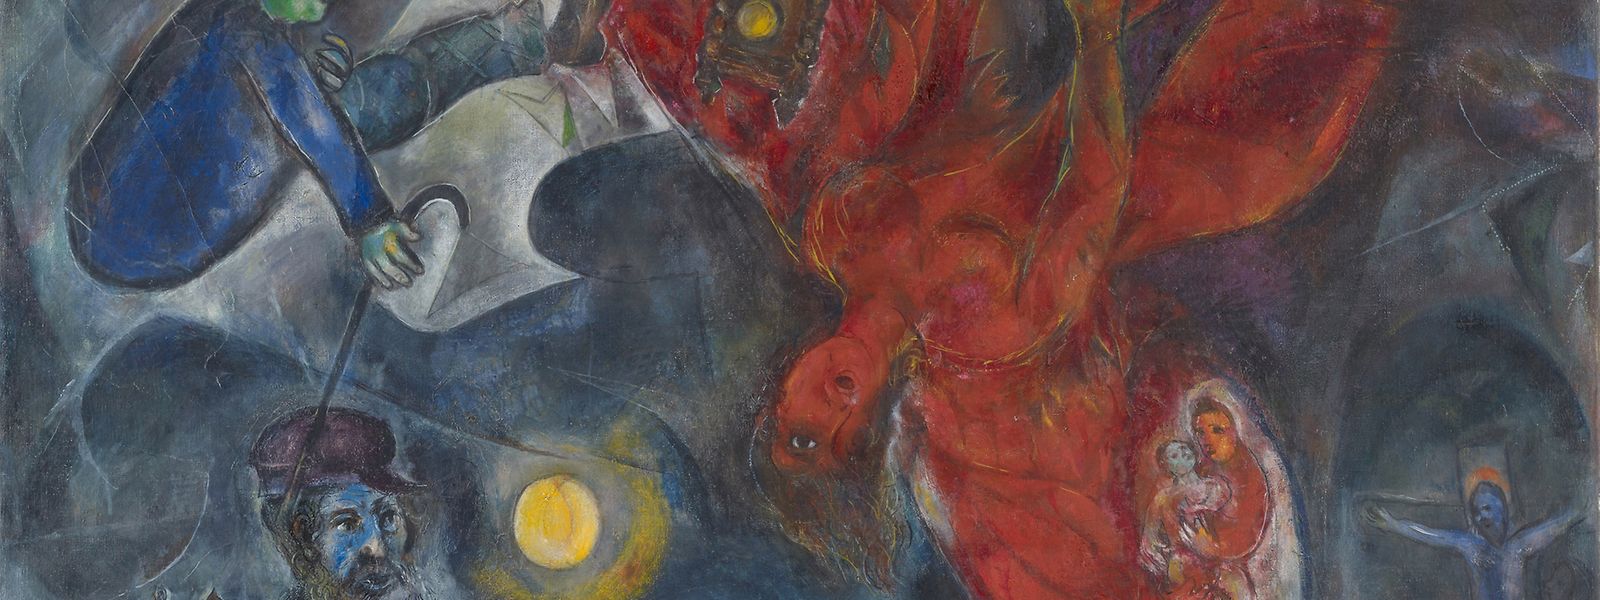 Vorbote der Katastrophe: Marc Chagalls’ Werk „Der Engelssturz“, 1923/1933/1947, Öl auf Leinwand, 147,5 x 188,5 cm, Kunstmuseum Basel, Depositum aus Privatsammlung. 